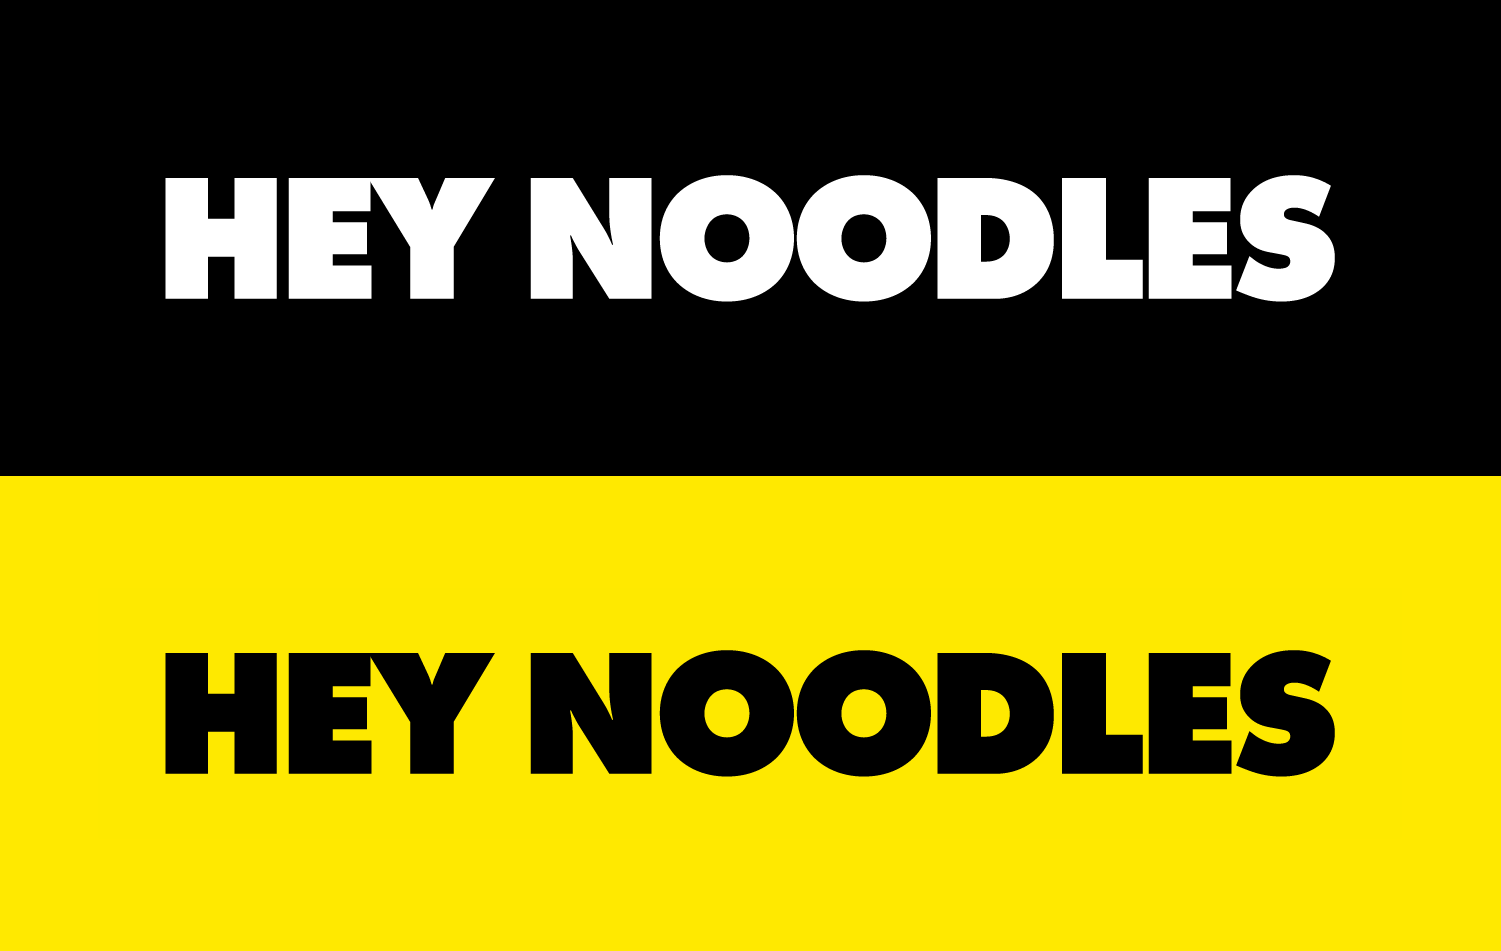 Hey Noodles Wordmark